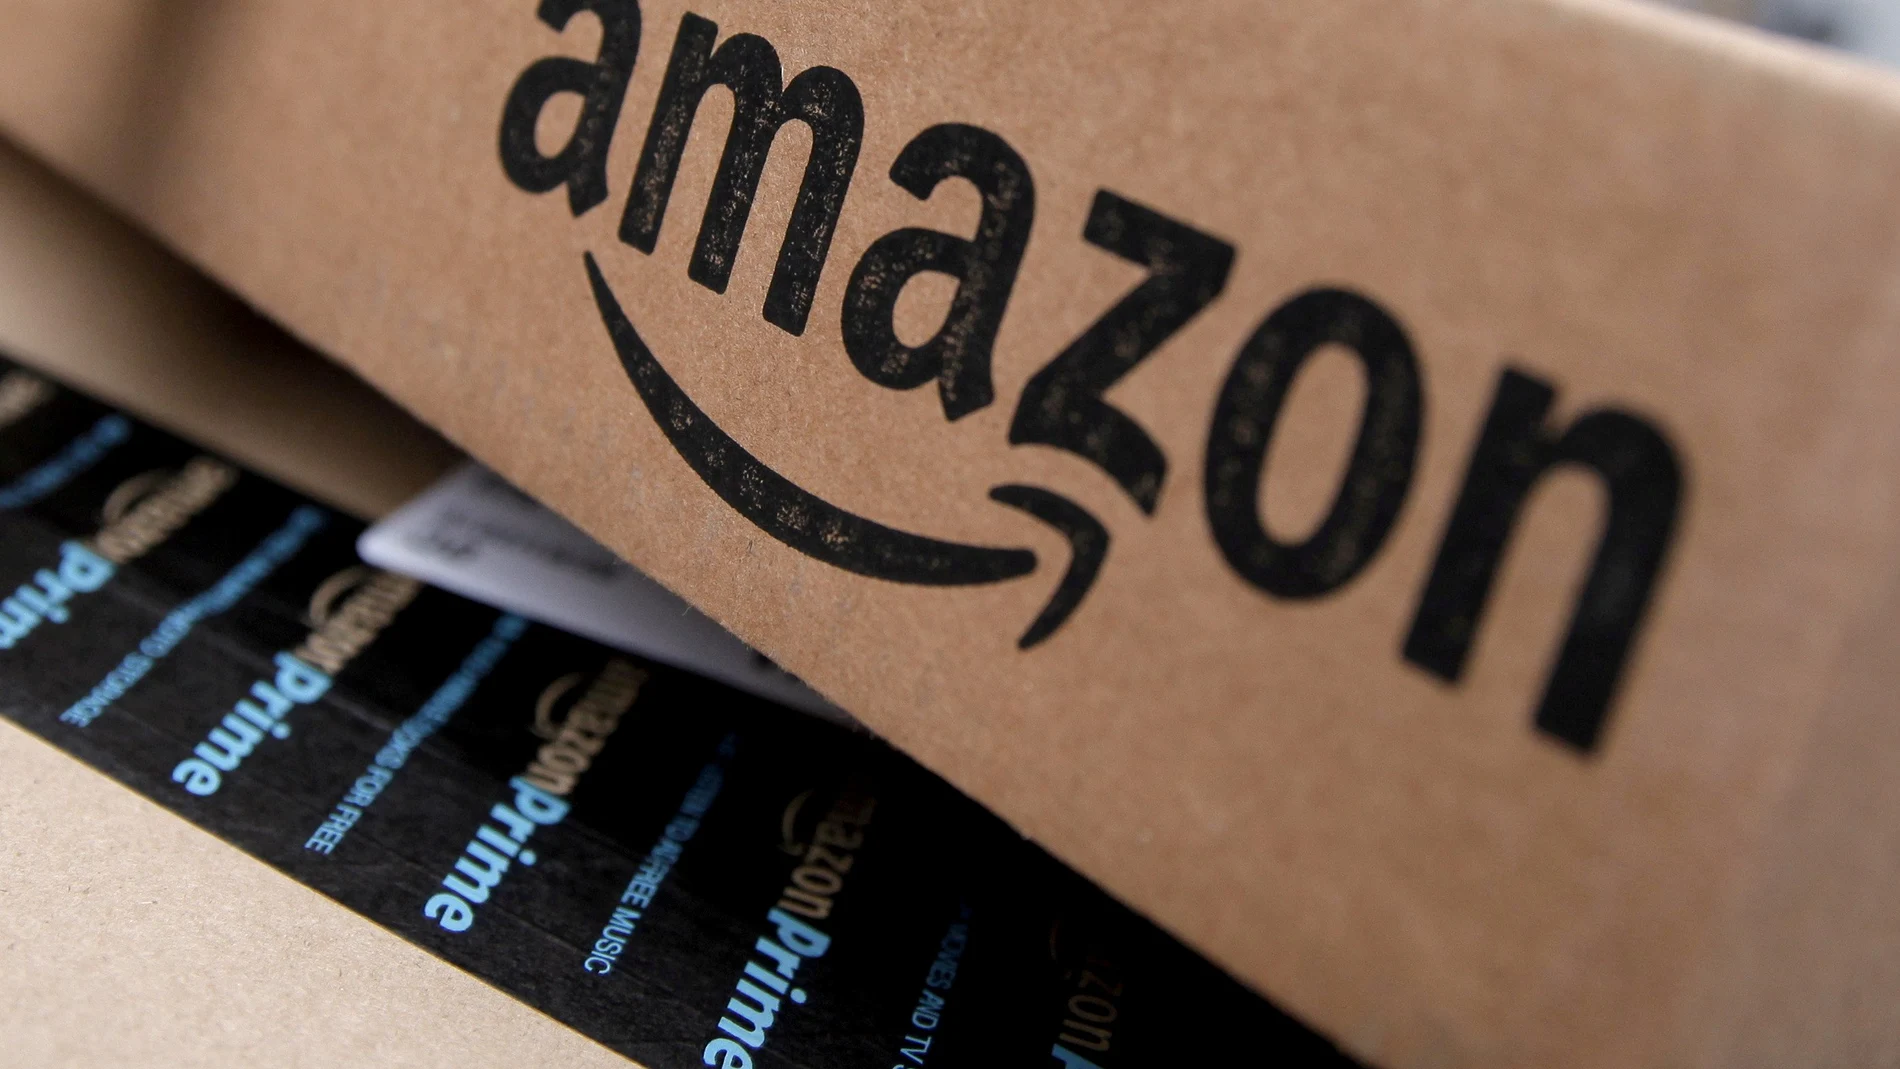 Los informes internos publicados por Wired desvelan la laxitud de Amazon en la protección de la información de sus clientes.